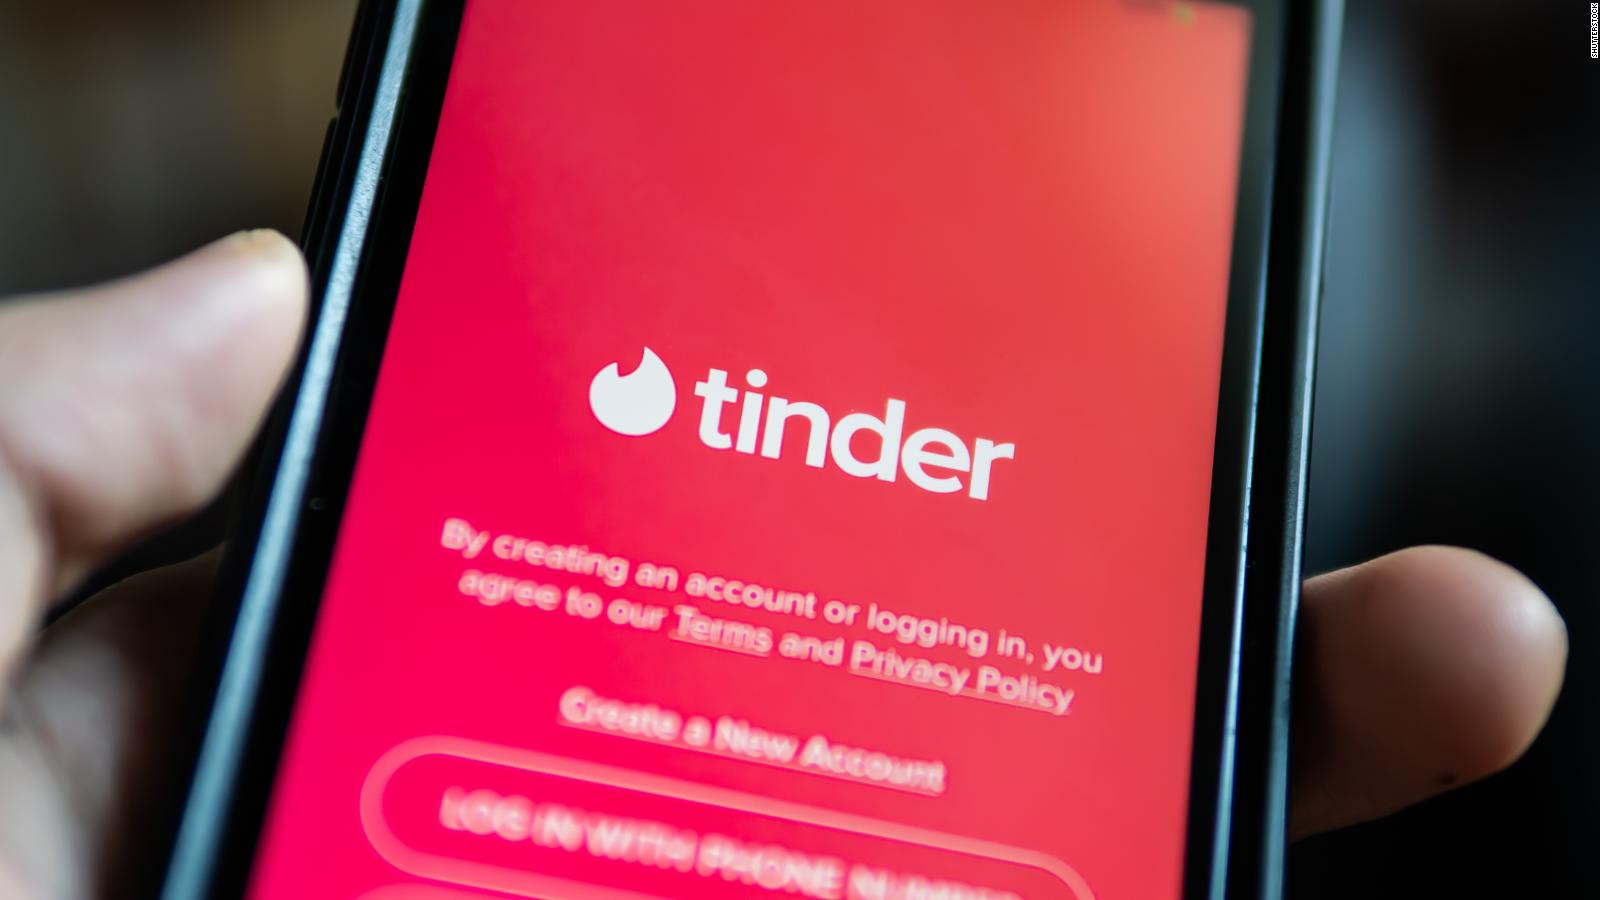 Gobierno de Tailandia organiza "viajes Tinder" para solteros